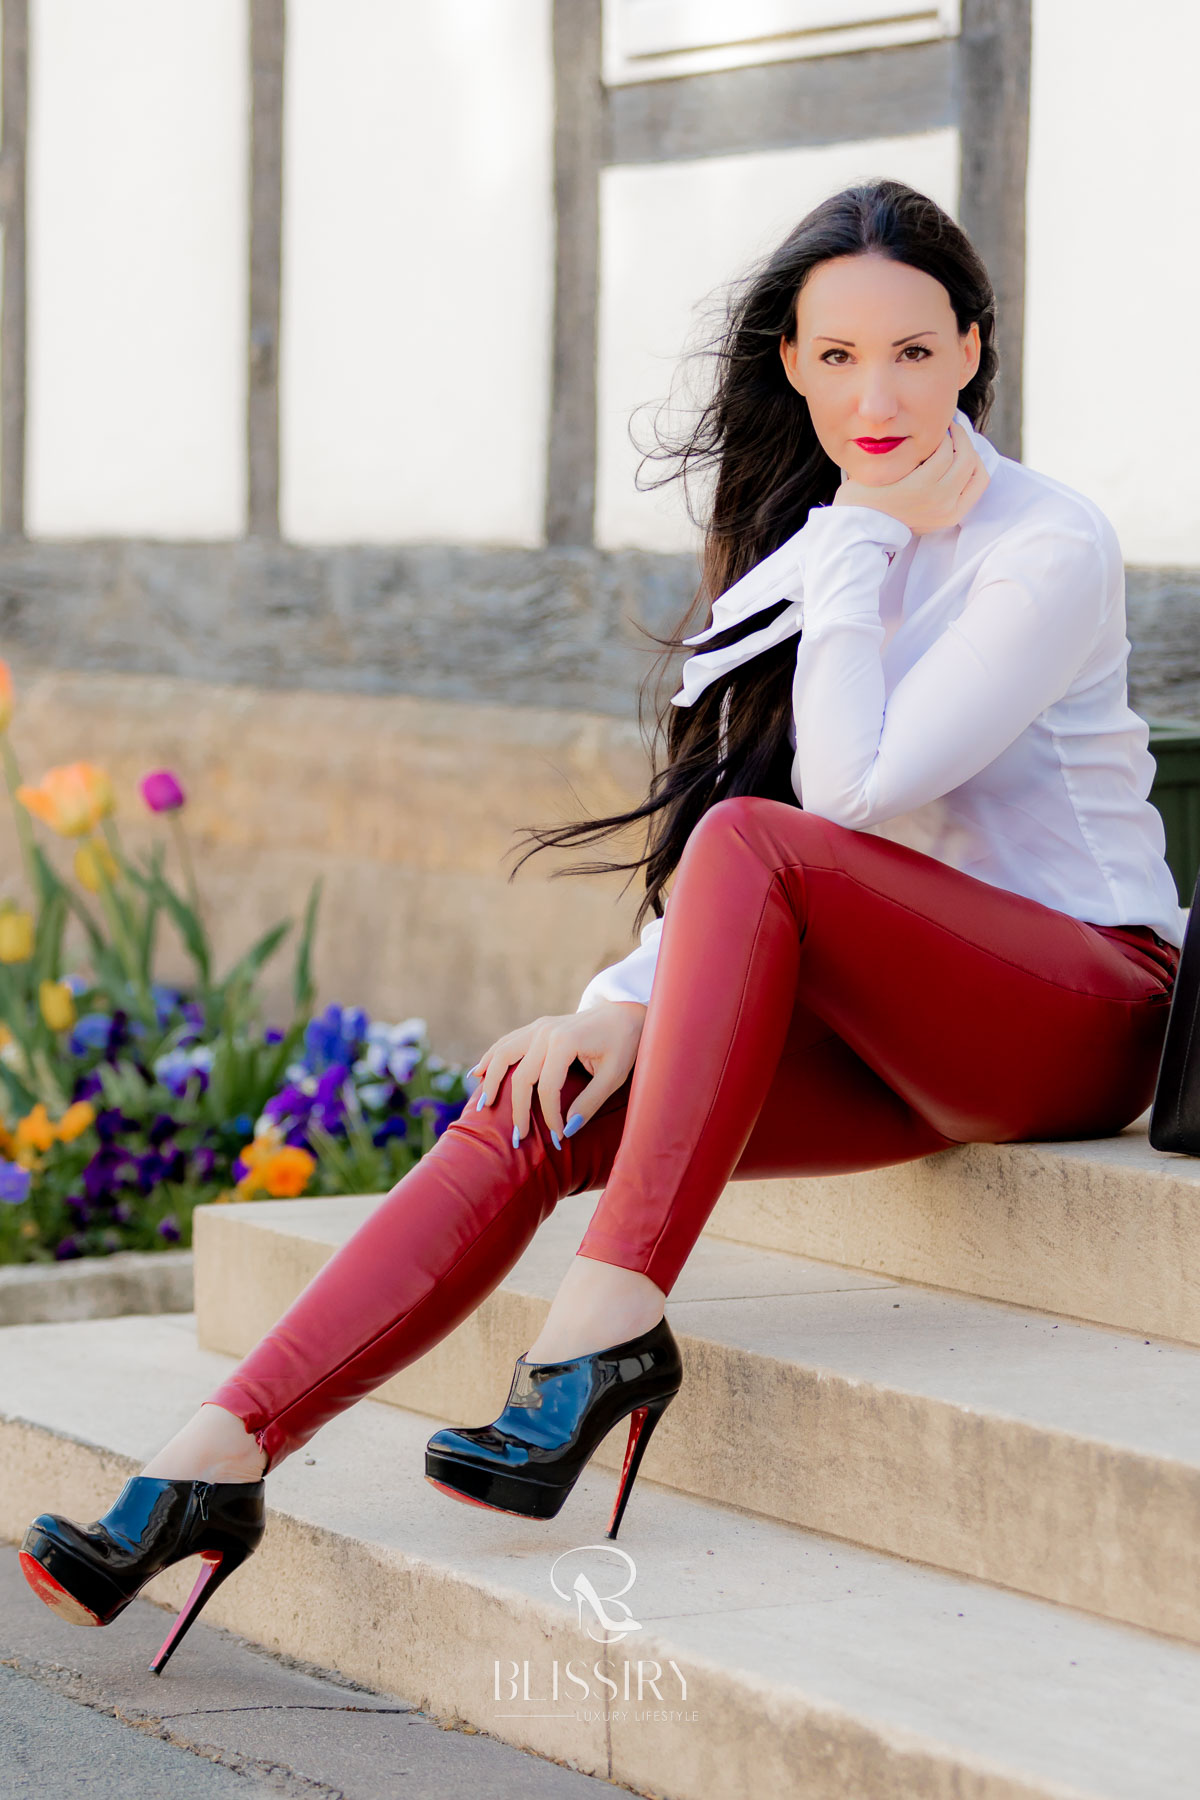 Fashionblogger Vanessa Pur - Luxusblog - Lederhose in rot, Plateau Pumps von Christian Louboutin, weiße Bluse - Handtasche Karl Lagerfeld - Smartphone - Lifestyleblog - lange Haare, rote Lippen